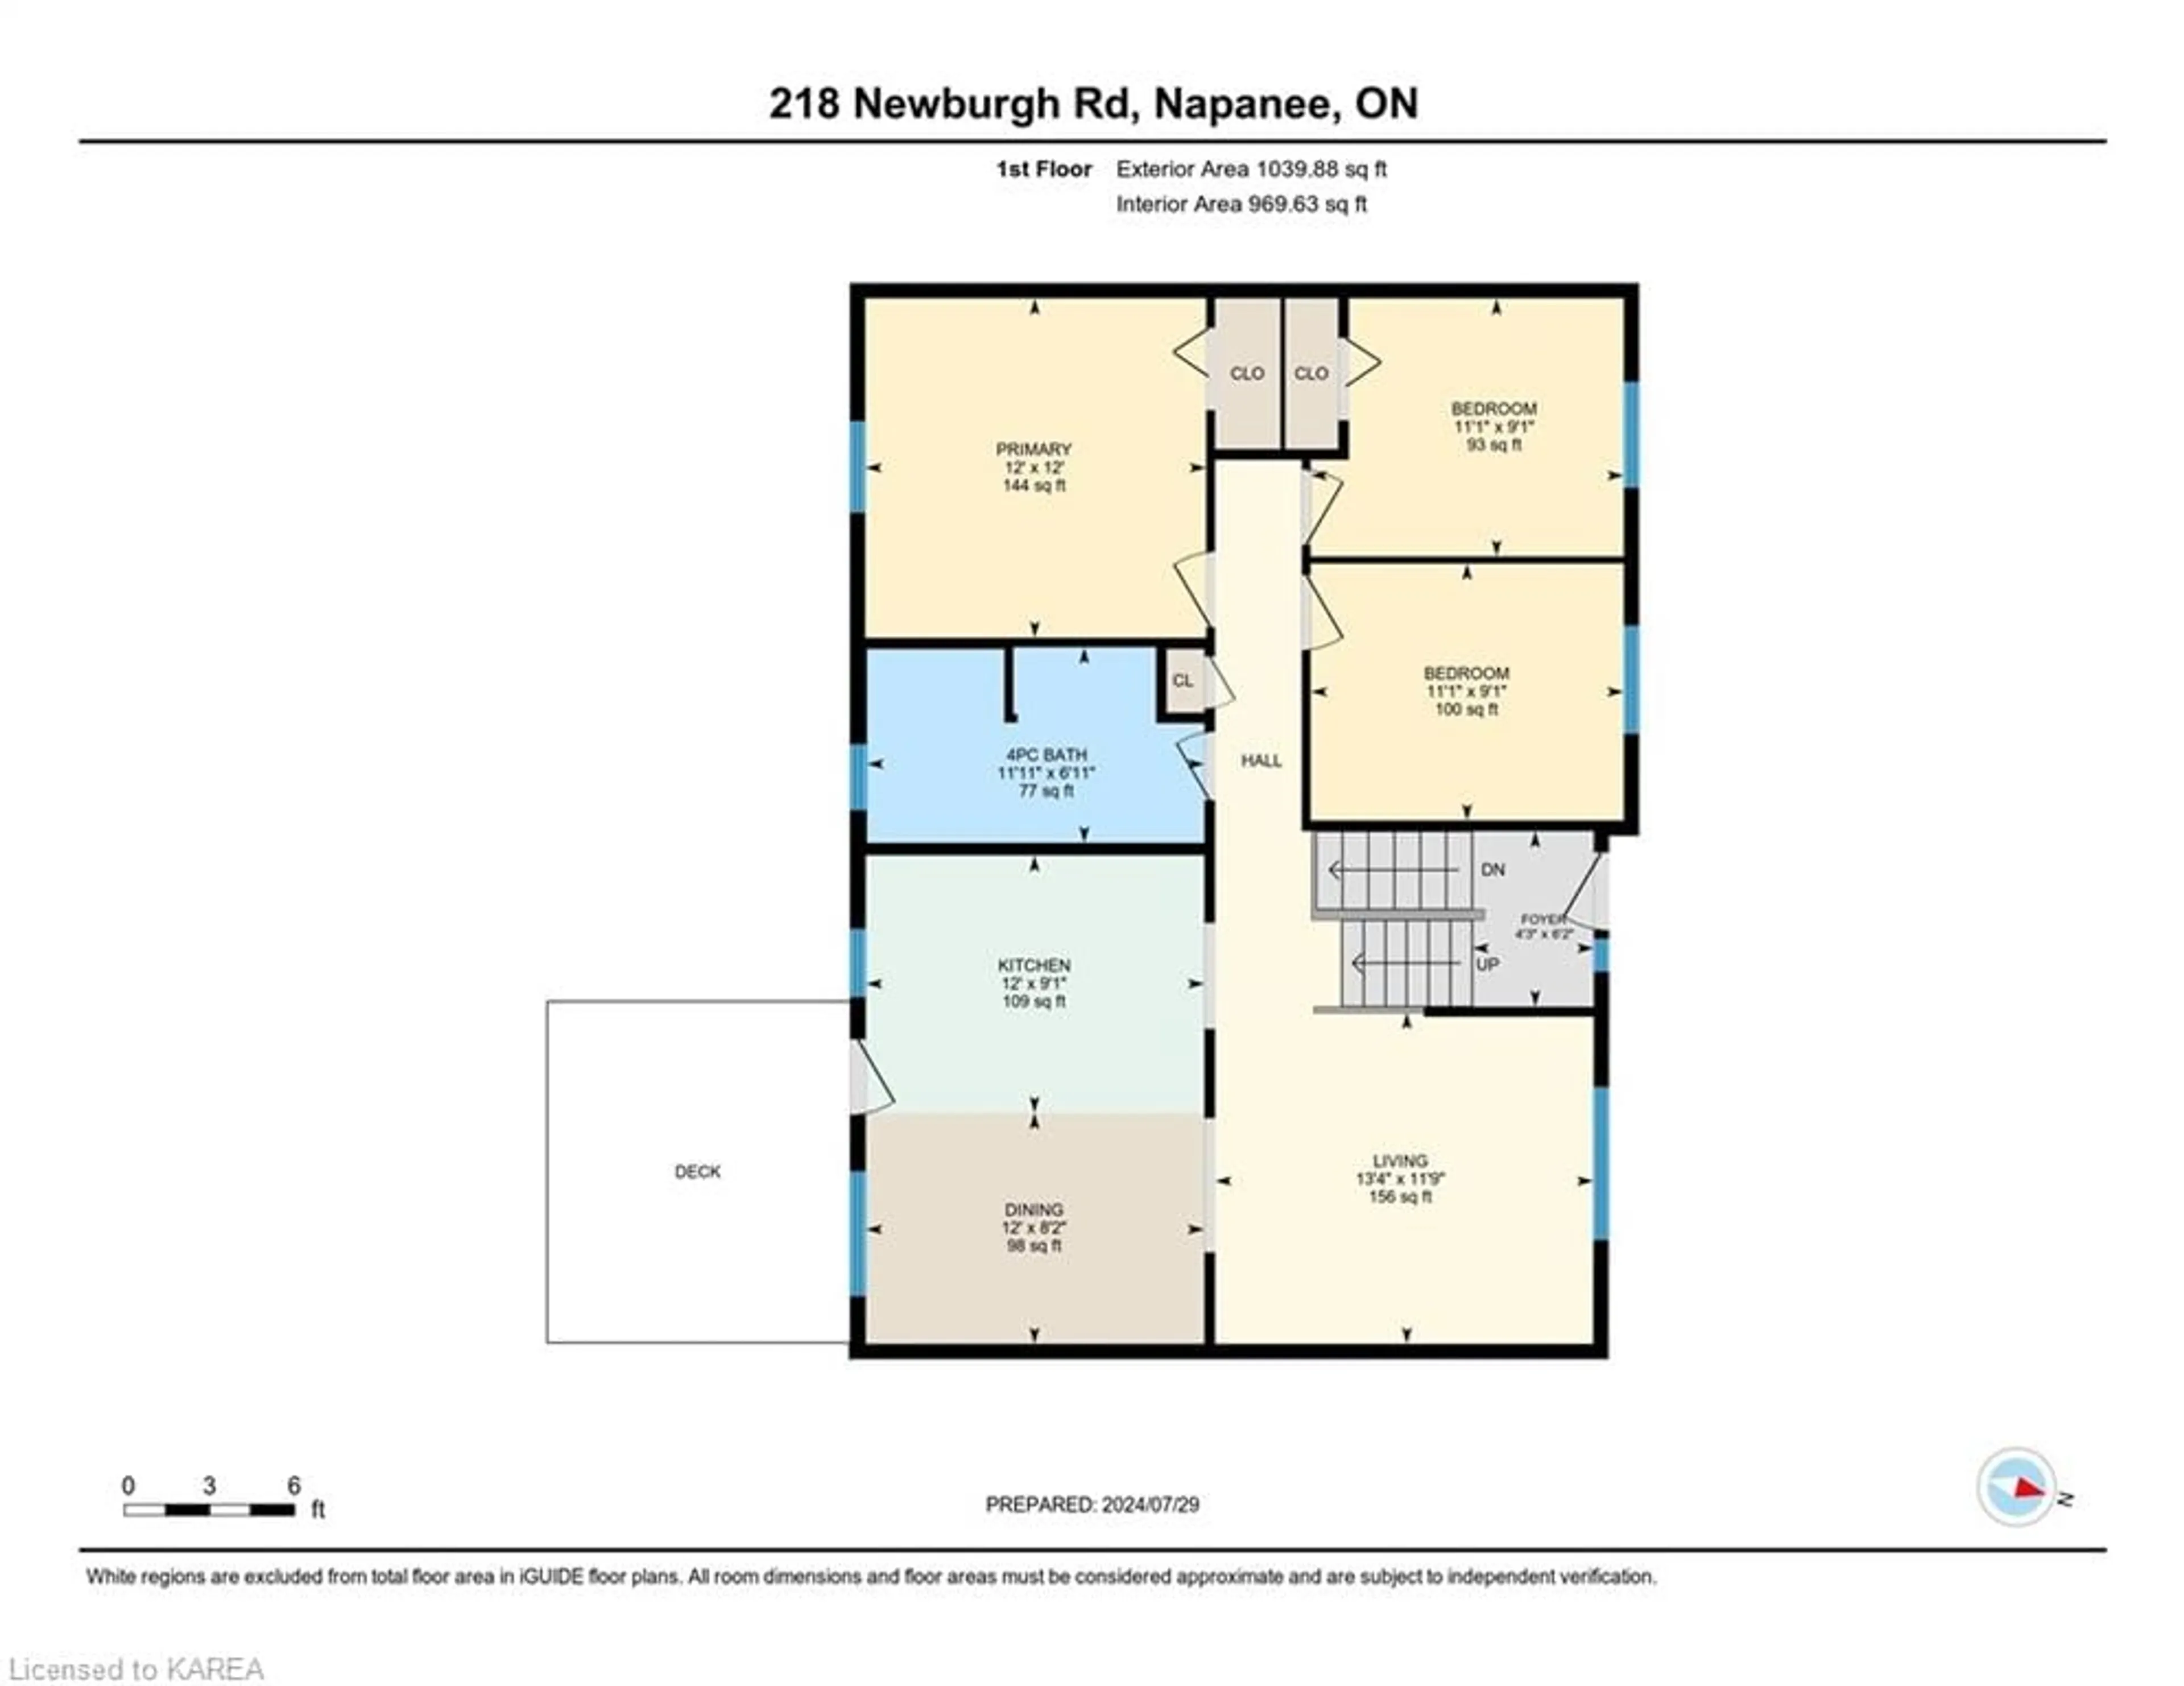 Floor plan for 218 Newburgh Rd, Napanee Ontario K7R 1C9